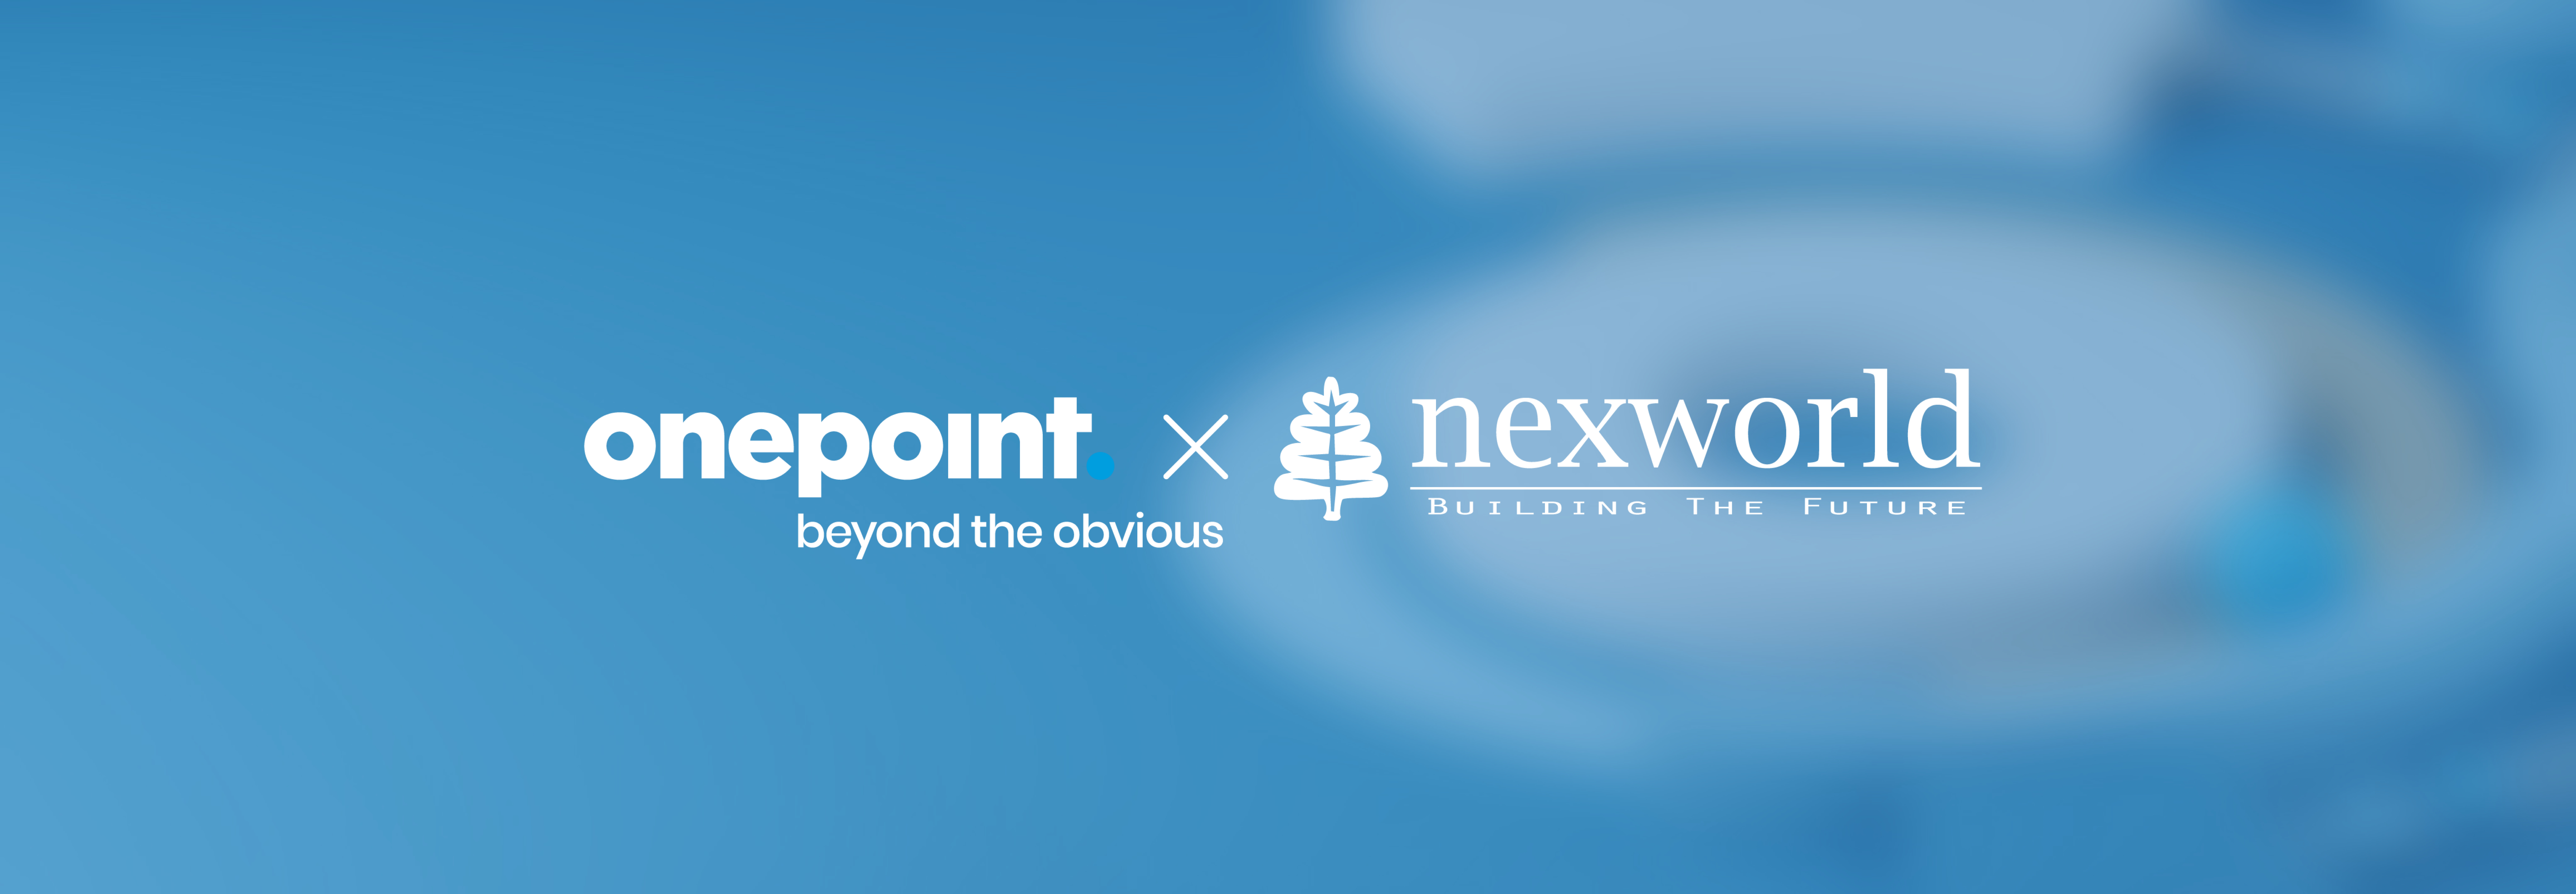 bannière présentant le logo onepoint x nexworld suite à l'acquisition de Nexworld par onepoint